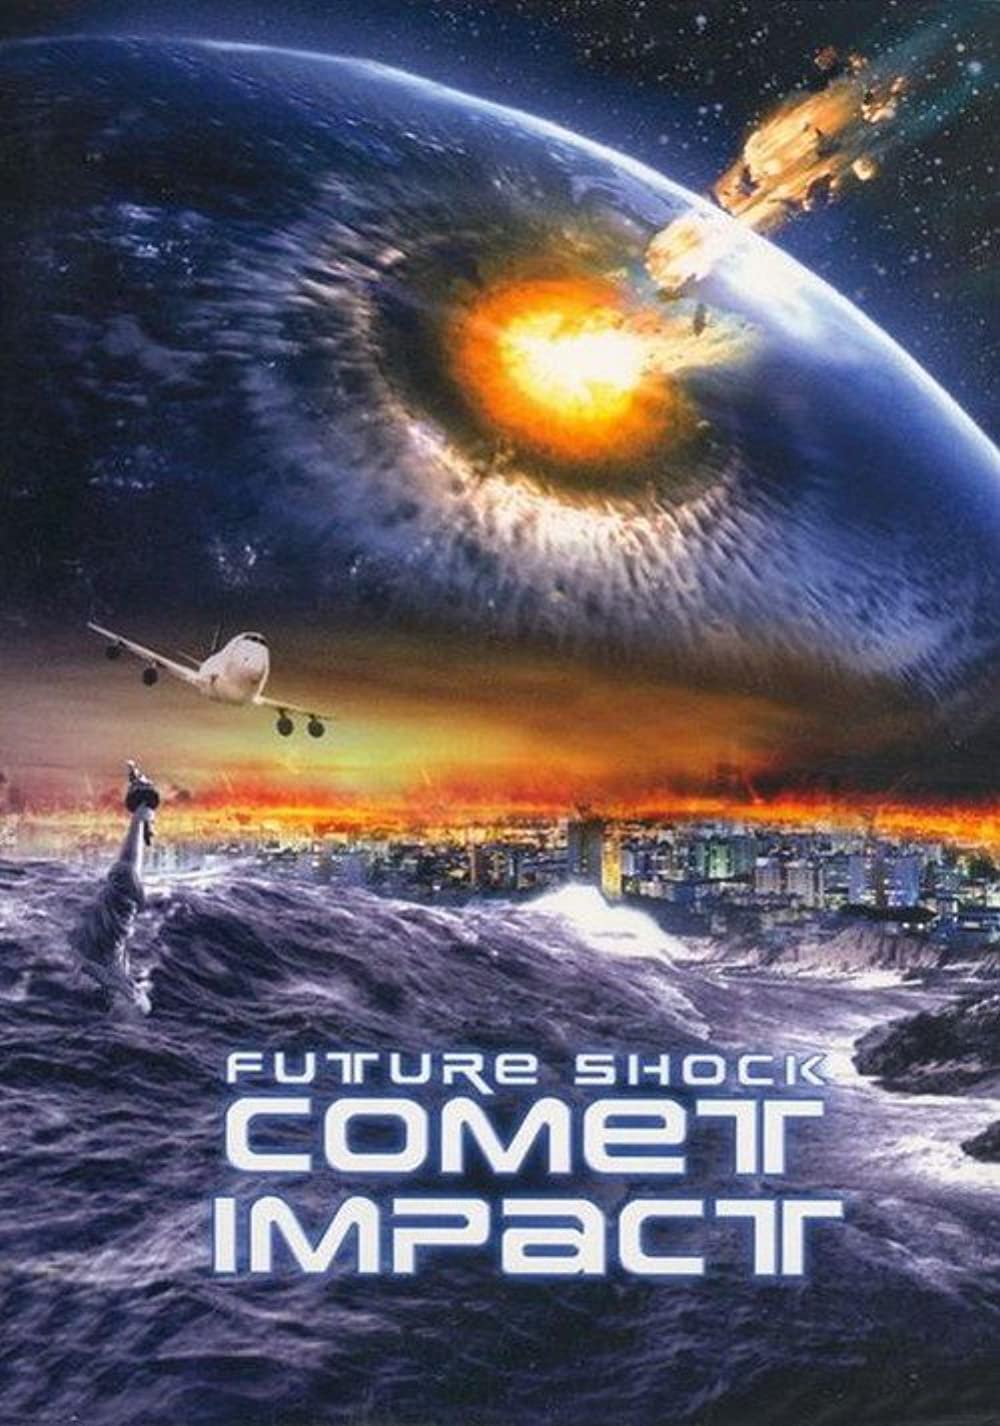 Download Comet Impact Movie | Watch Comet Impact